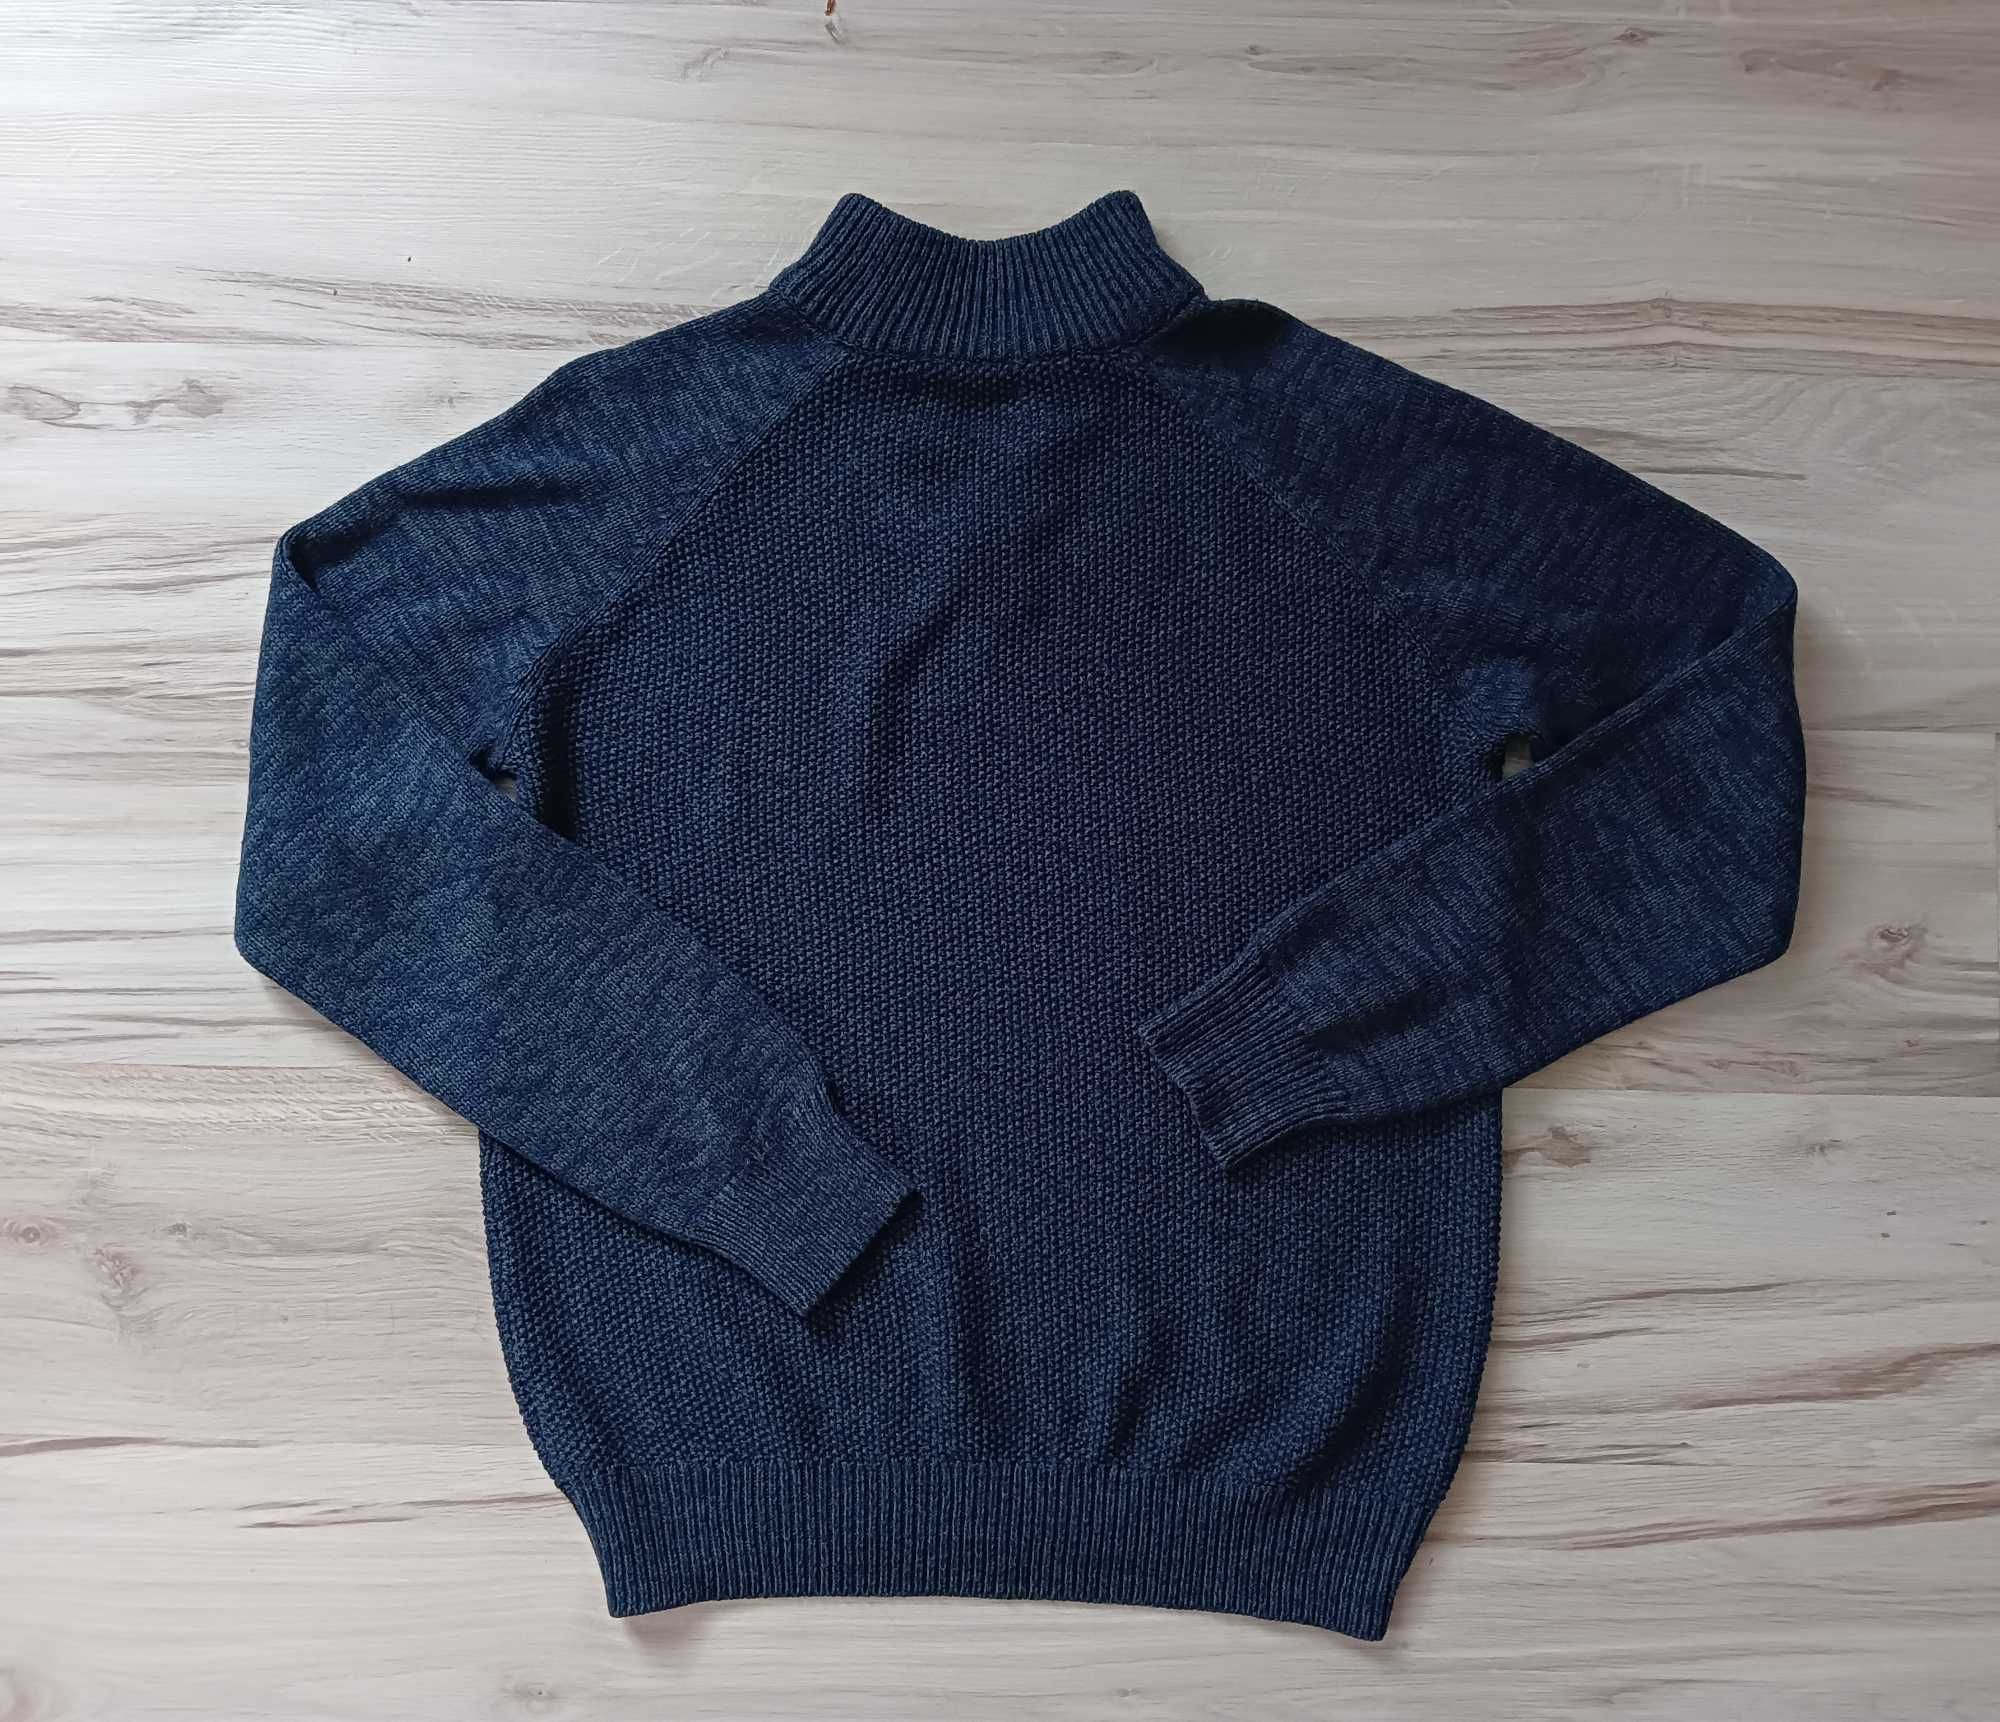 Granatowy, męski sweter o ozdobnymi guzikami r. L Dunnes